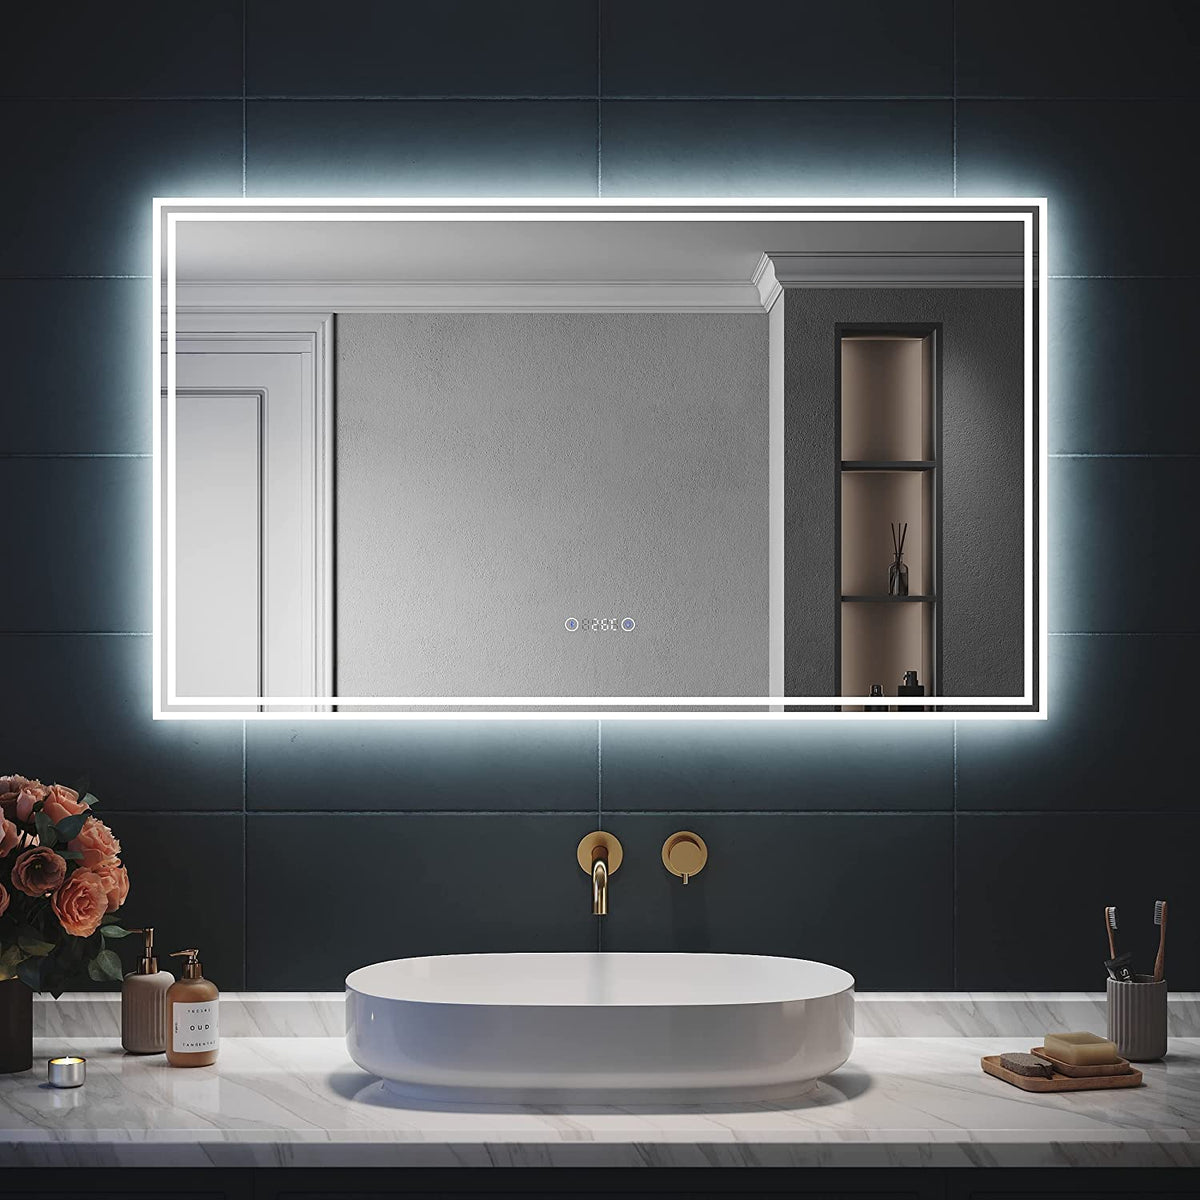 SIRHONA Miroir LED Salle de Bain Bluetooth 120x70cm Miroir Lumineux Salle de Bain avec Eclairage Intégré, Anti-buée, Affichage de L'heure et Température - SIRHONA